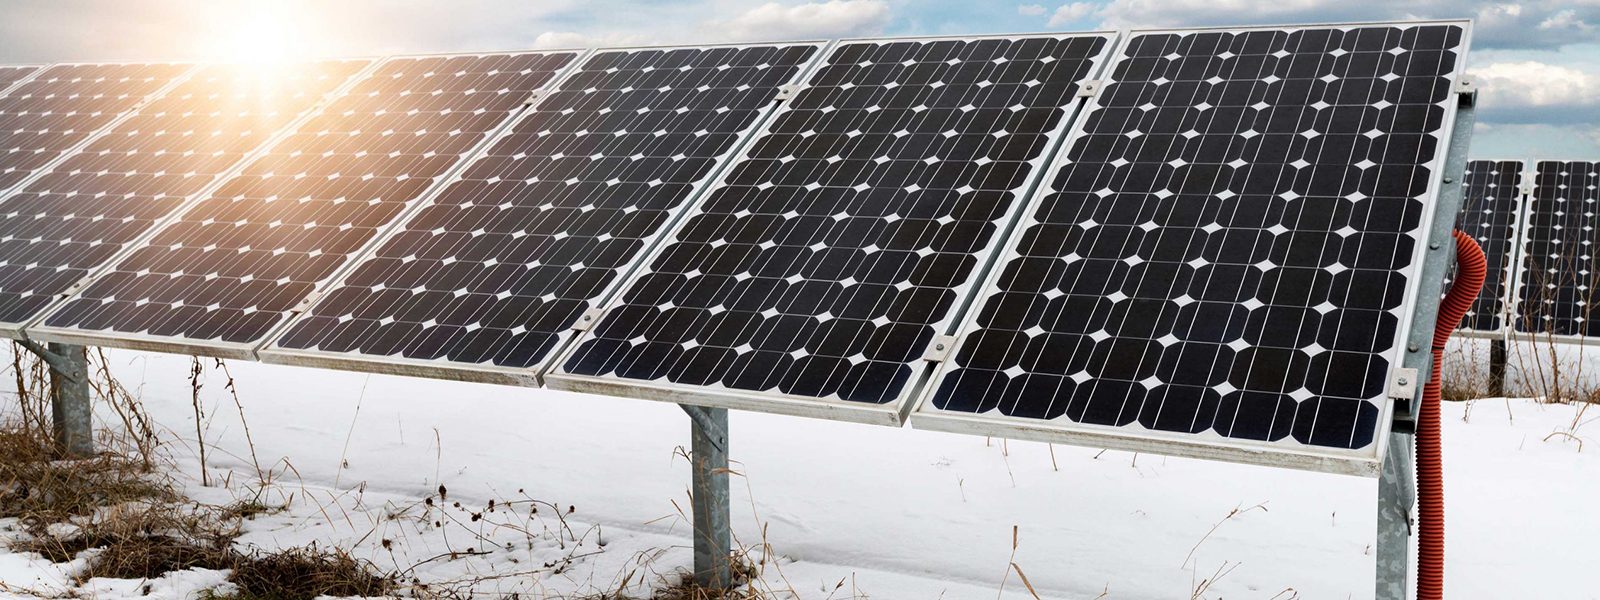 Vertikale Photovoltaik: Wenn Solarmodule in die Höhe wachsen- Image